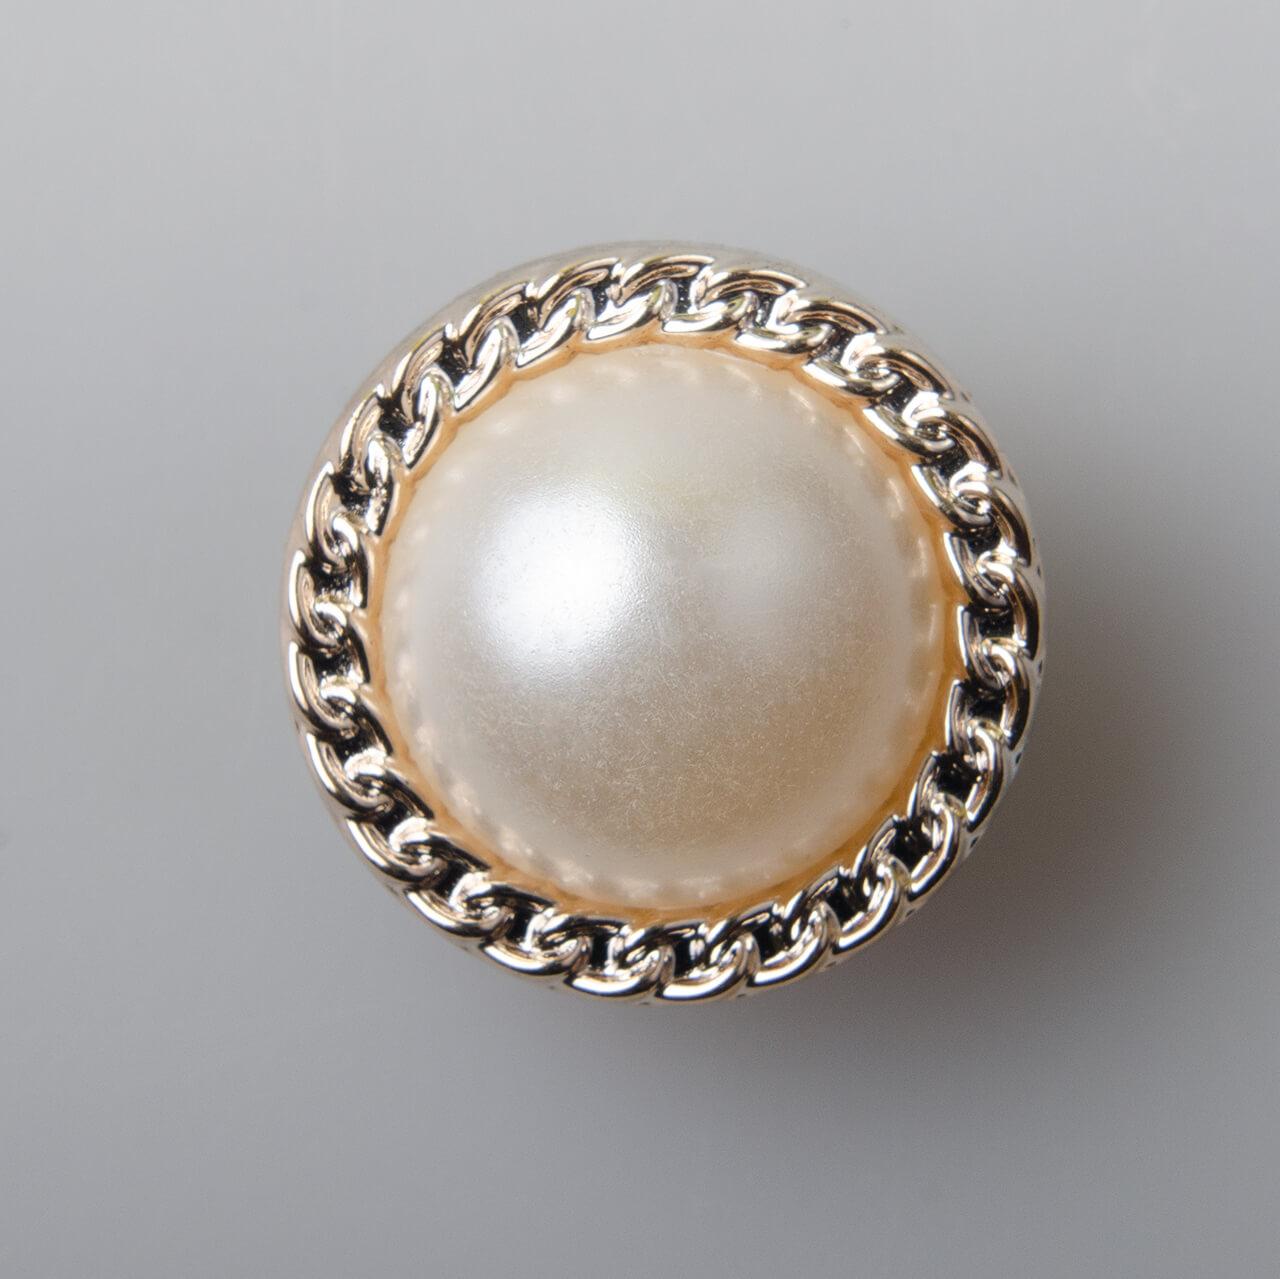 Guzik elegancki perłowy, tworzywo sztuczne, śr. 21 mm, kolor złoty (JD79)